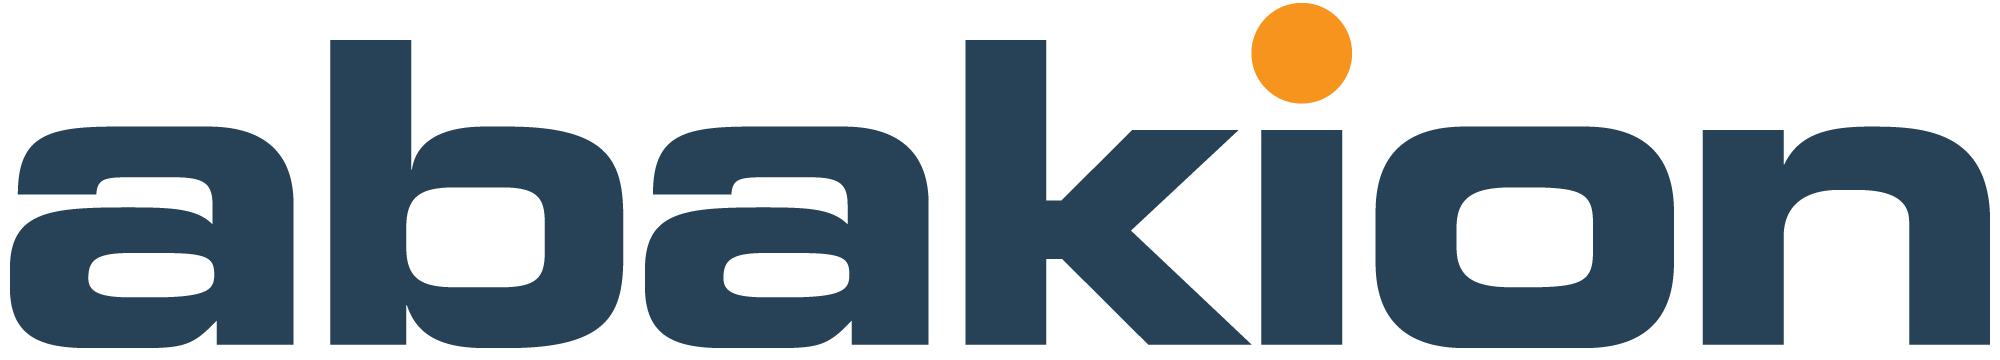 Abakion logo